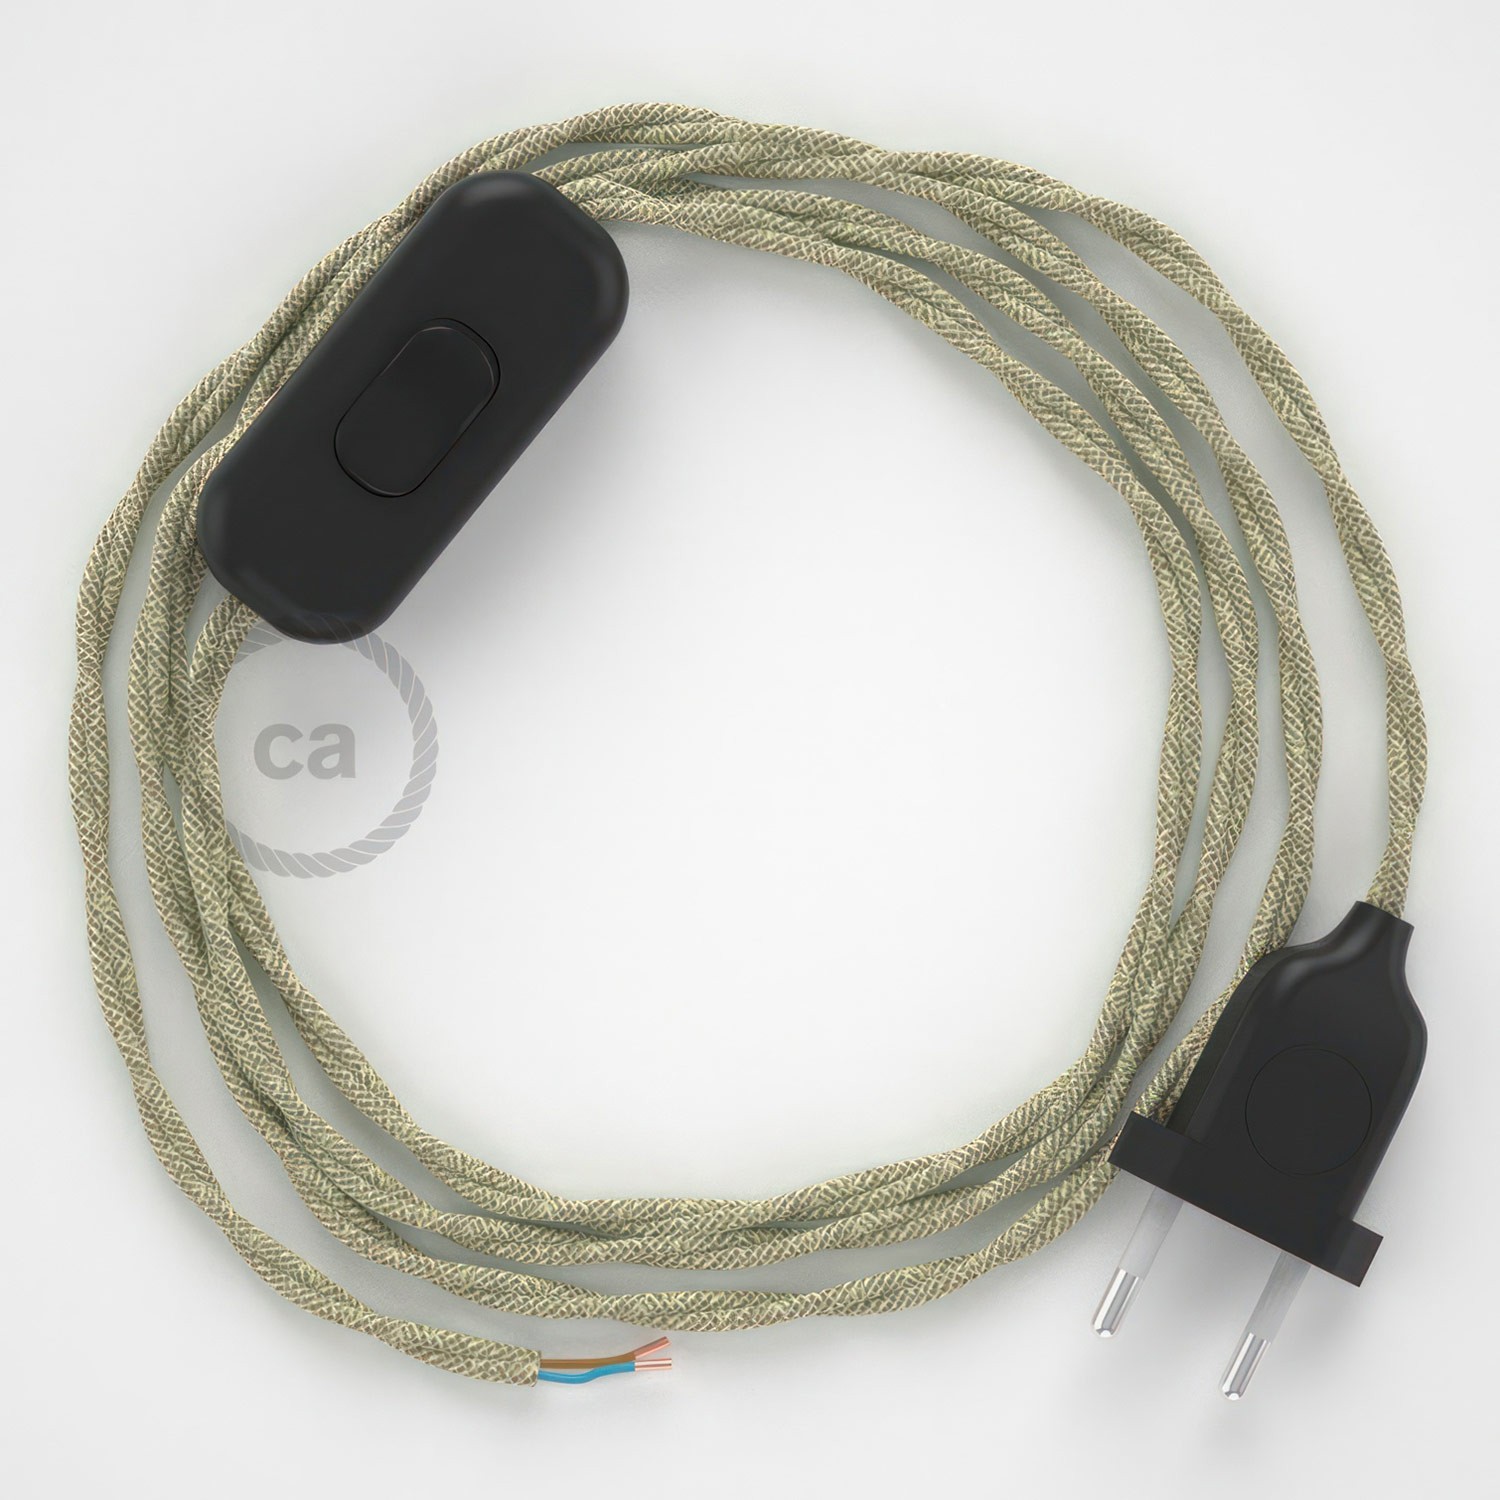 Cableado para lámpara, cable TN01 Lino Natural Neutro 1,8m. Elige tu el color de la clavija y del interruptor!